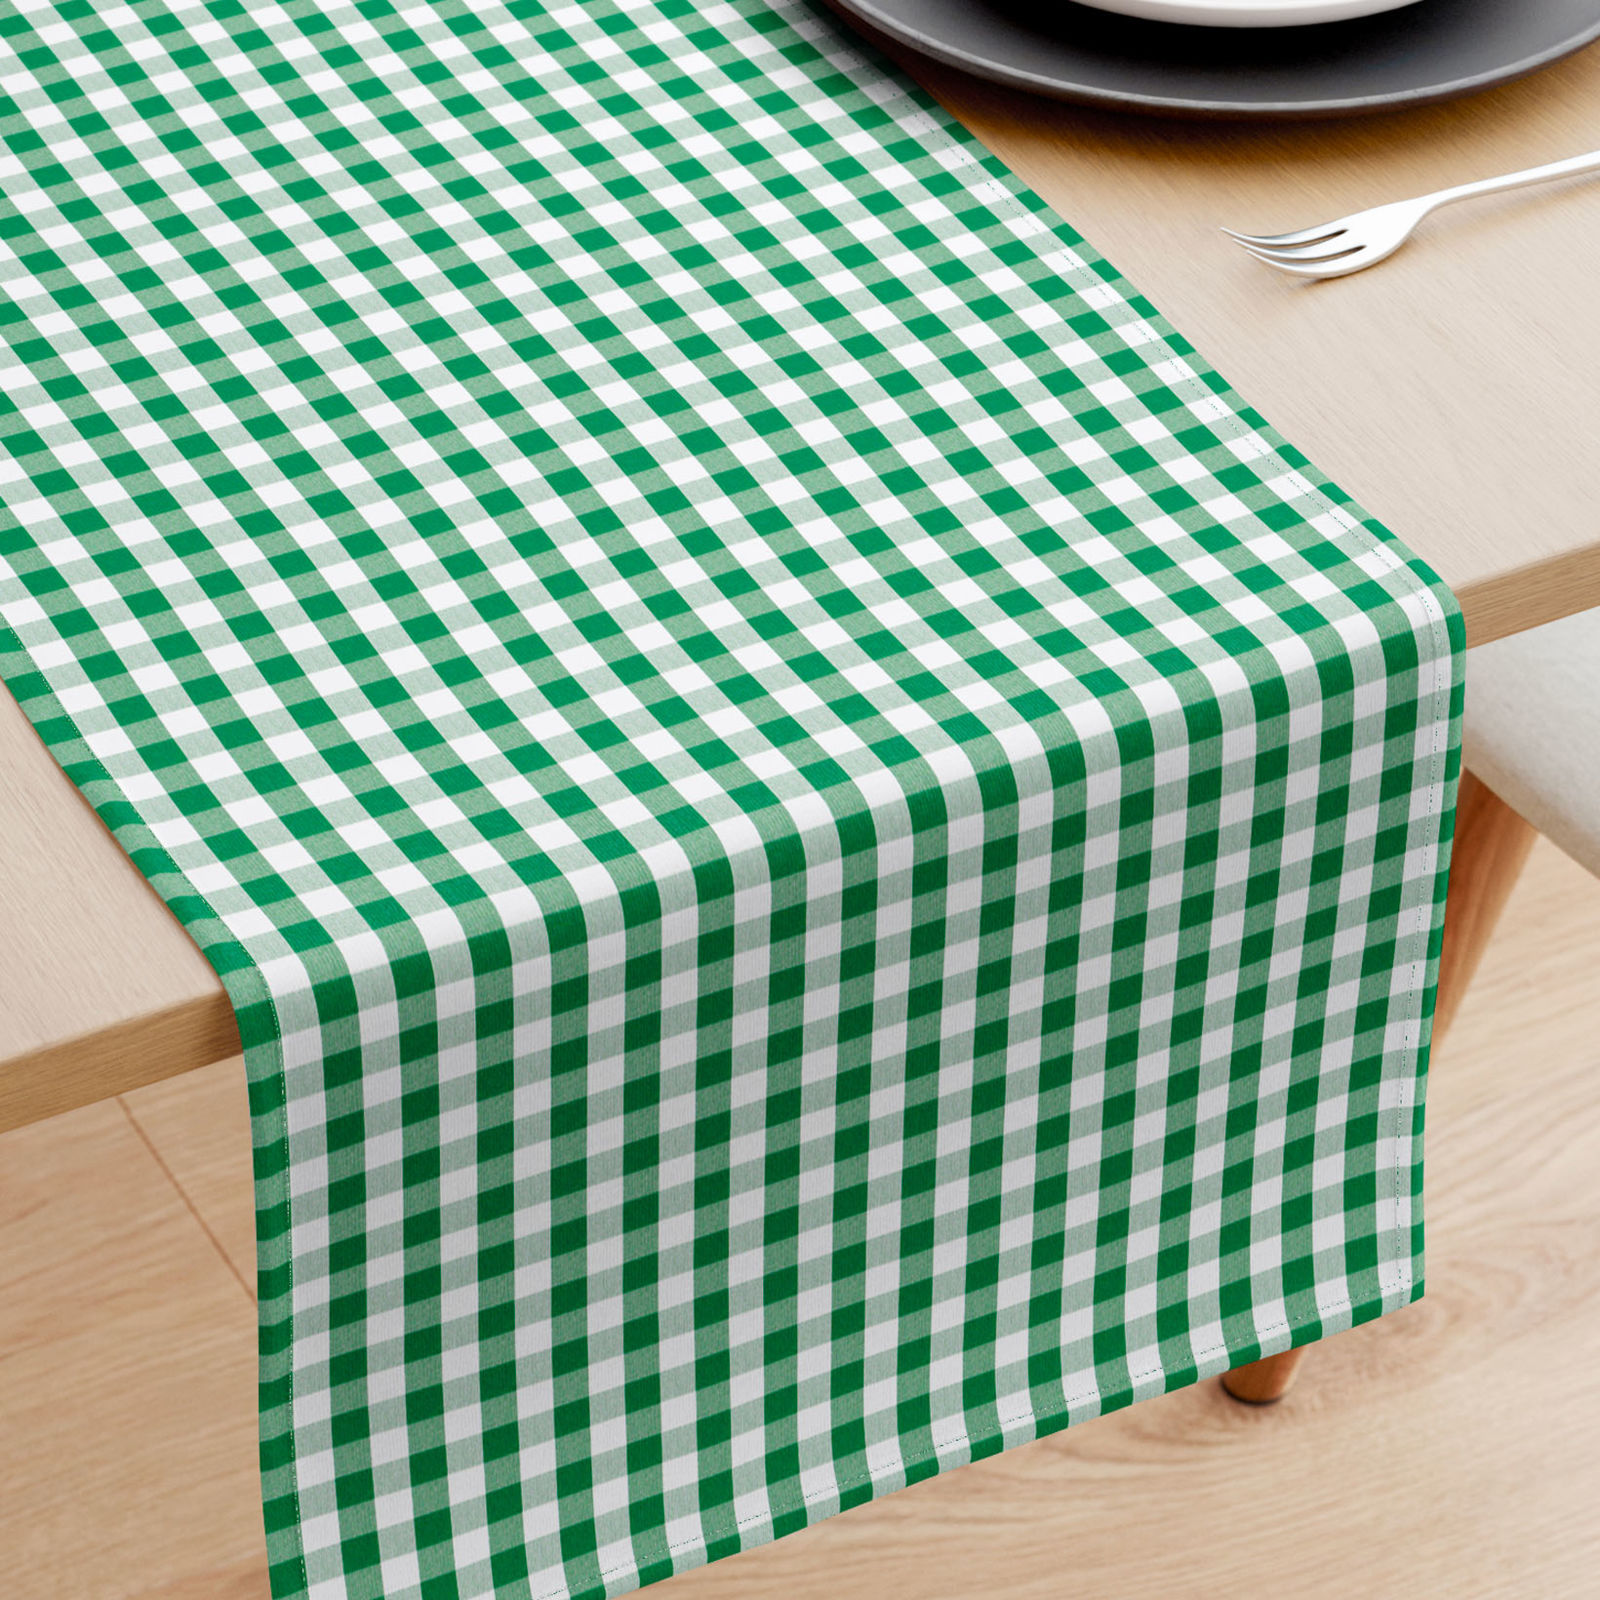 Bieżnik na stół z płótna bawełnianego - zielono-biała kratka